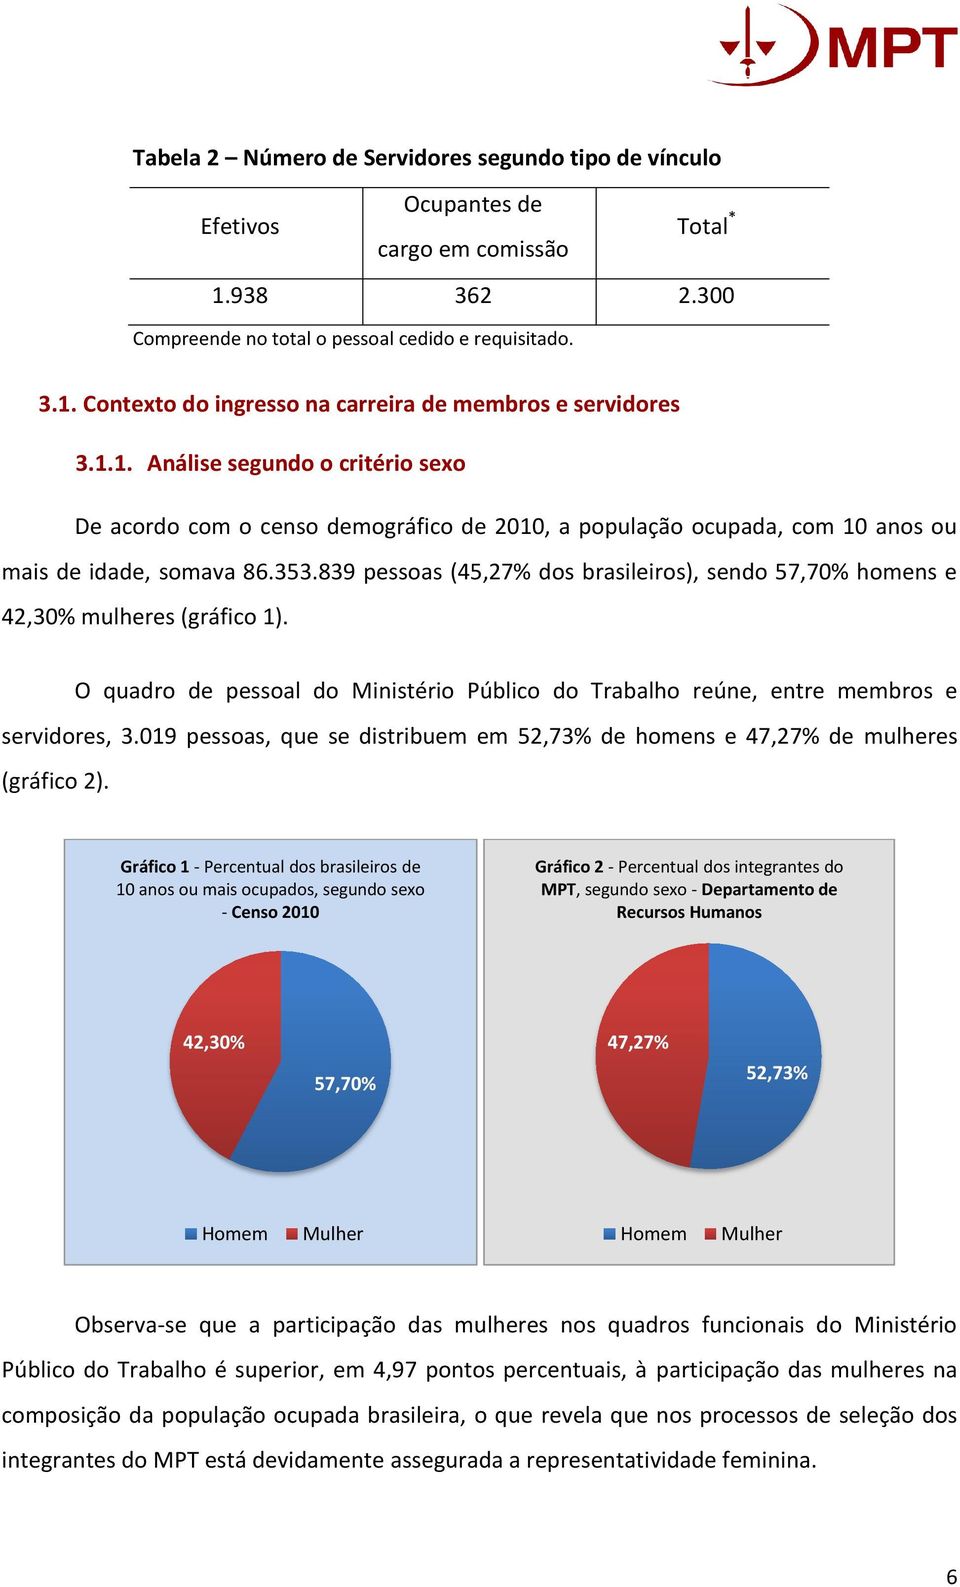 839 pessoas (45,27% dos brasileiros), sendo 57,70% homens e 42,30% mulheres (gráfico 1). O quadro de pessoal do Ministério Público do Trabalho reúne, entre membros e servidores, 3.